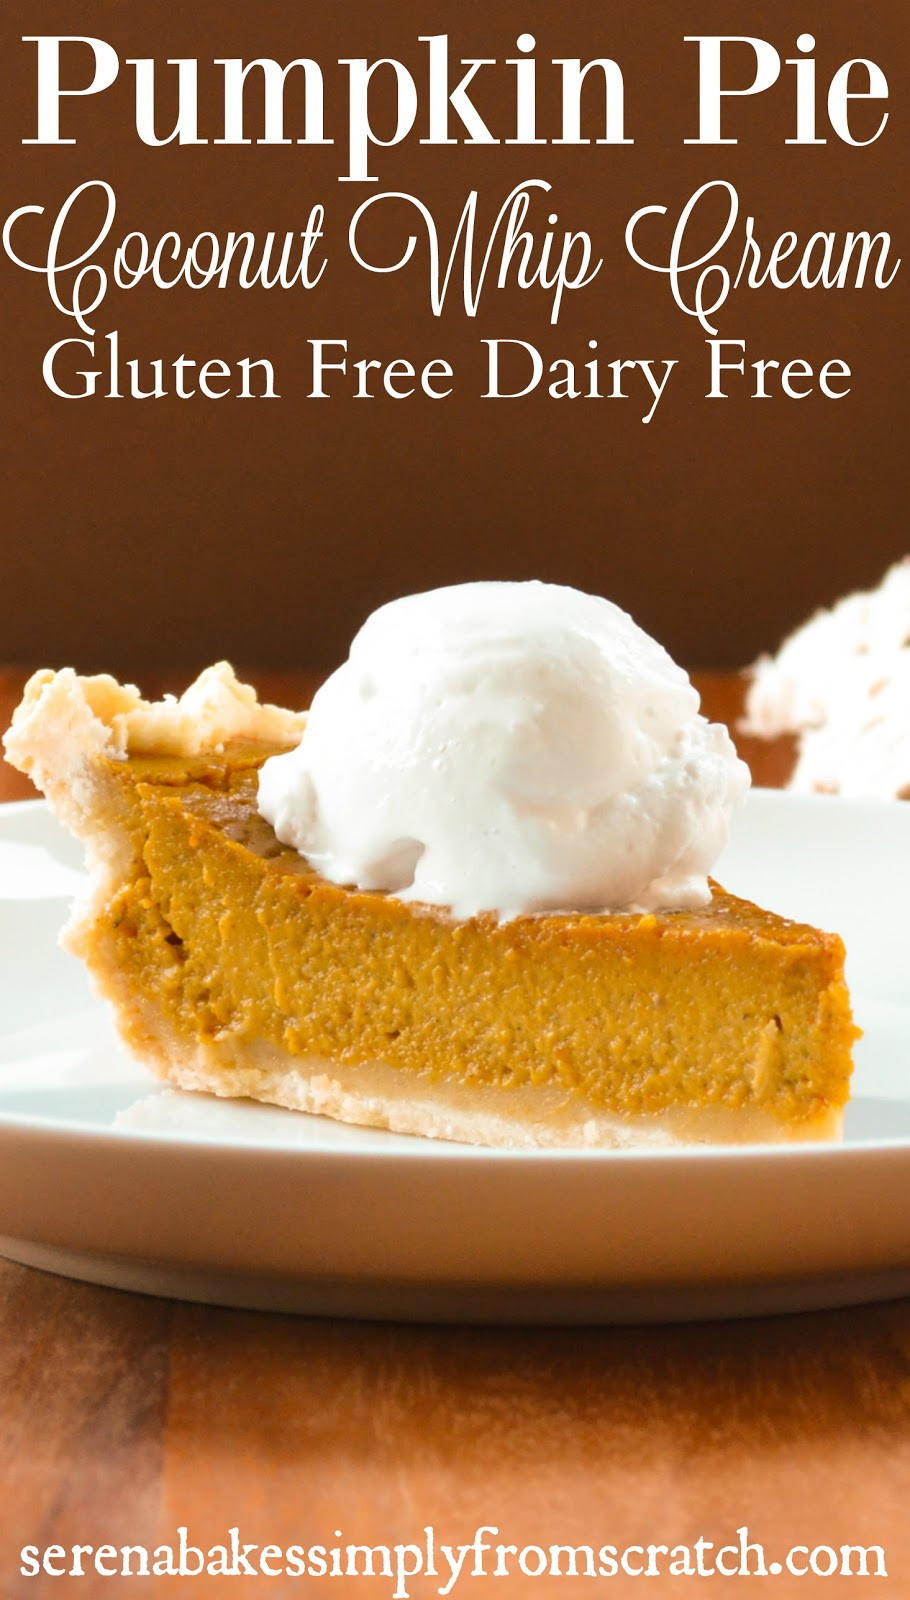 Gluten And Dairy Free Pumpkin Pie
 Gluten Free Dairy Free Pumpkin Pie With Coconut Whip Cream